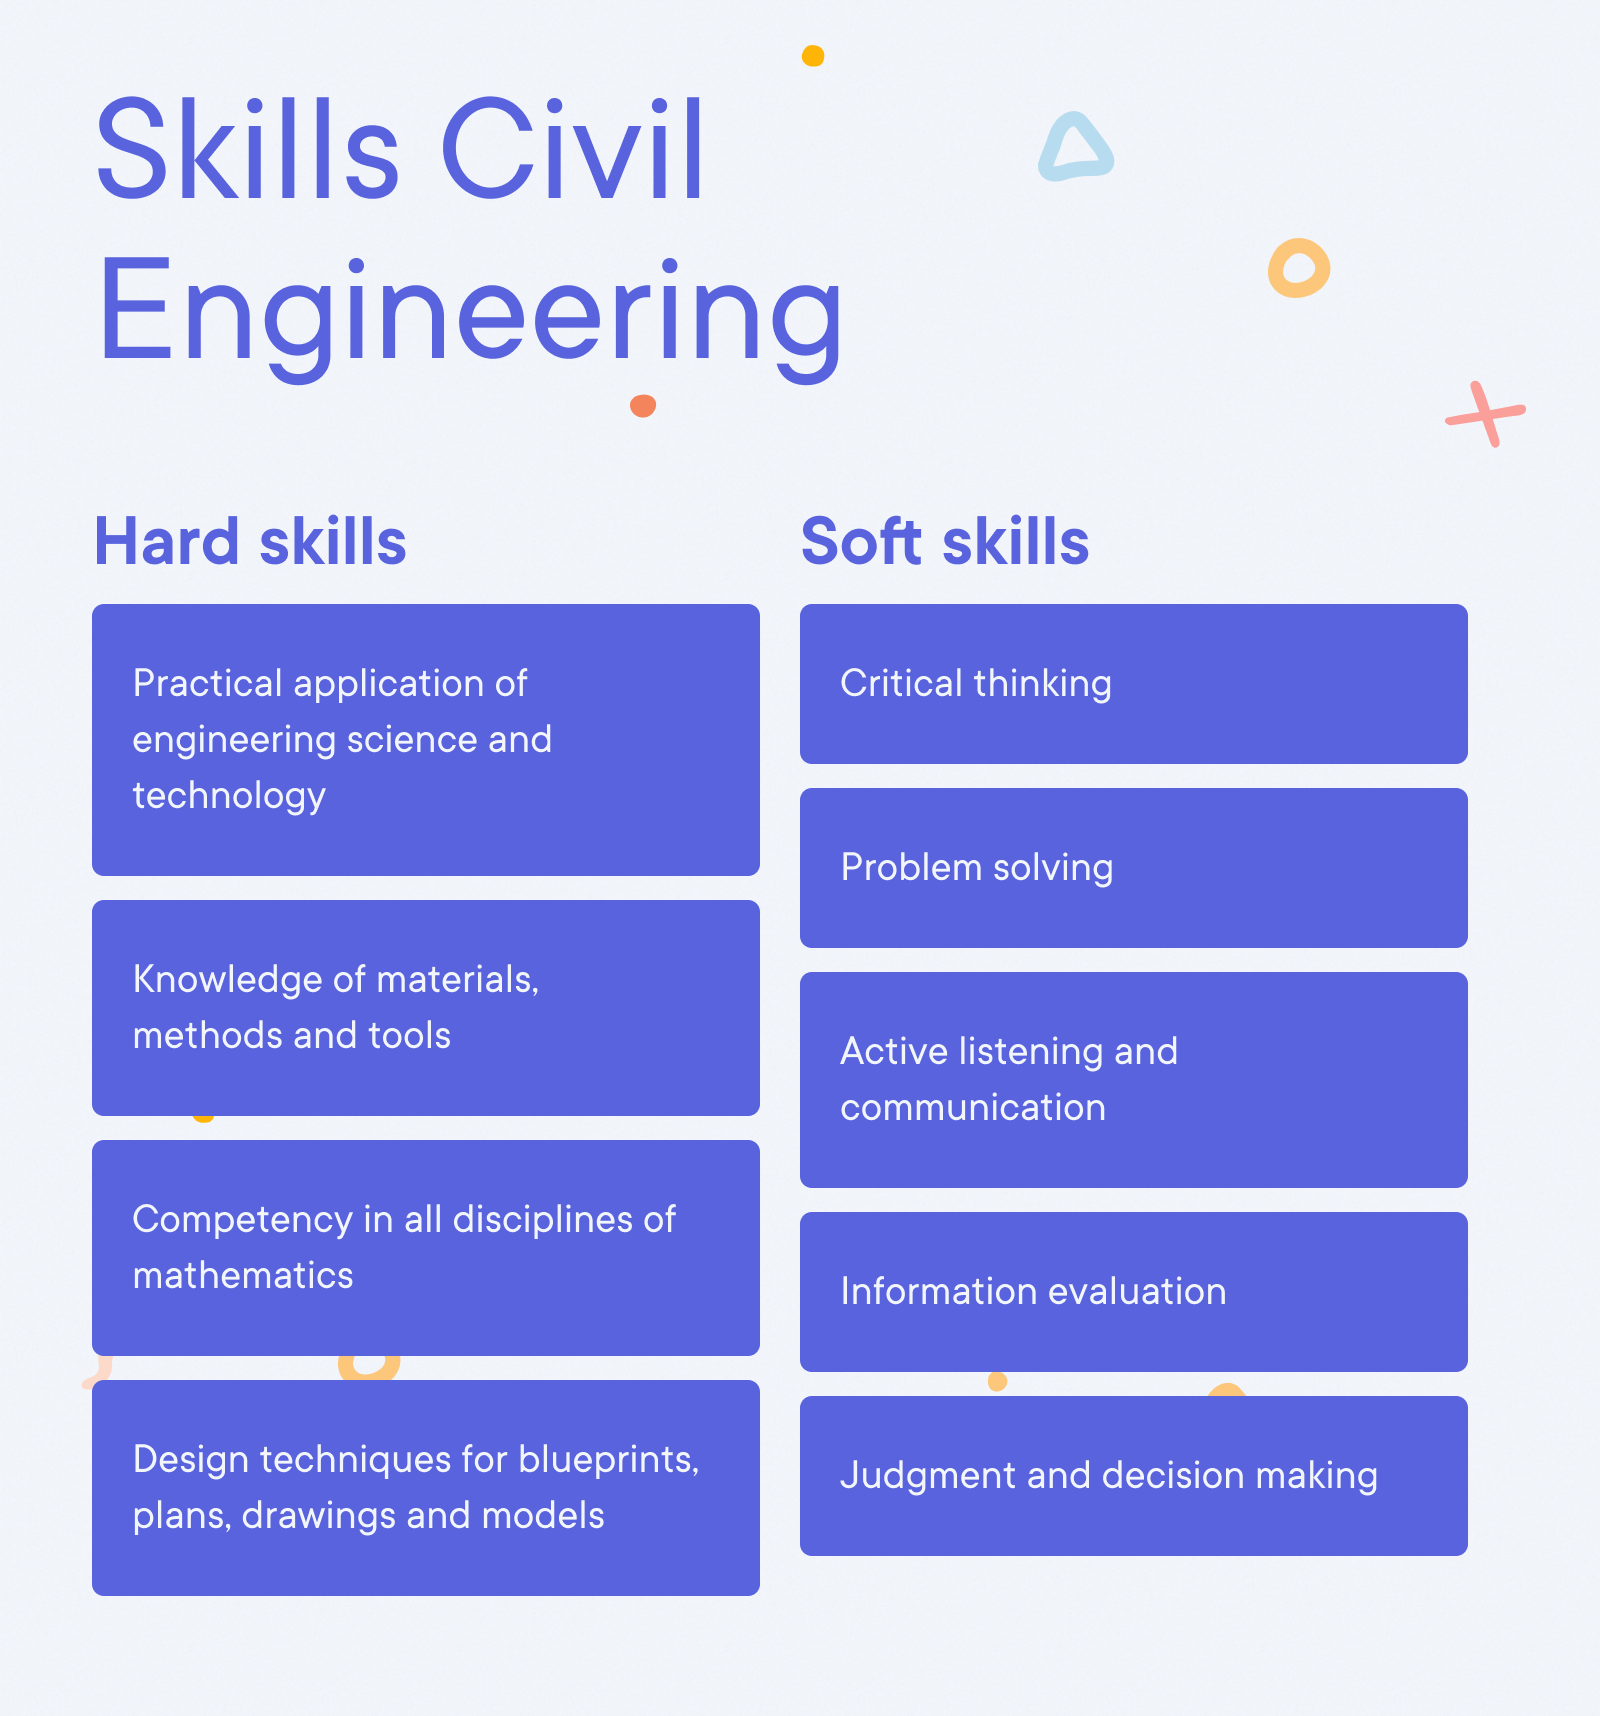 Civil Engineer Resume Example - Skills Civil Engineering